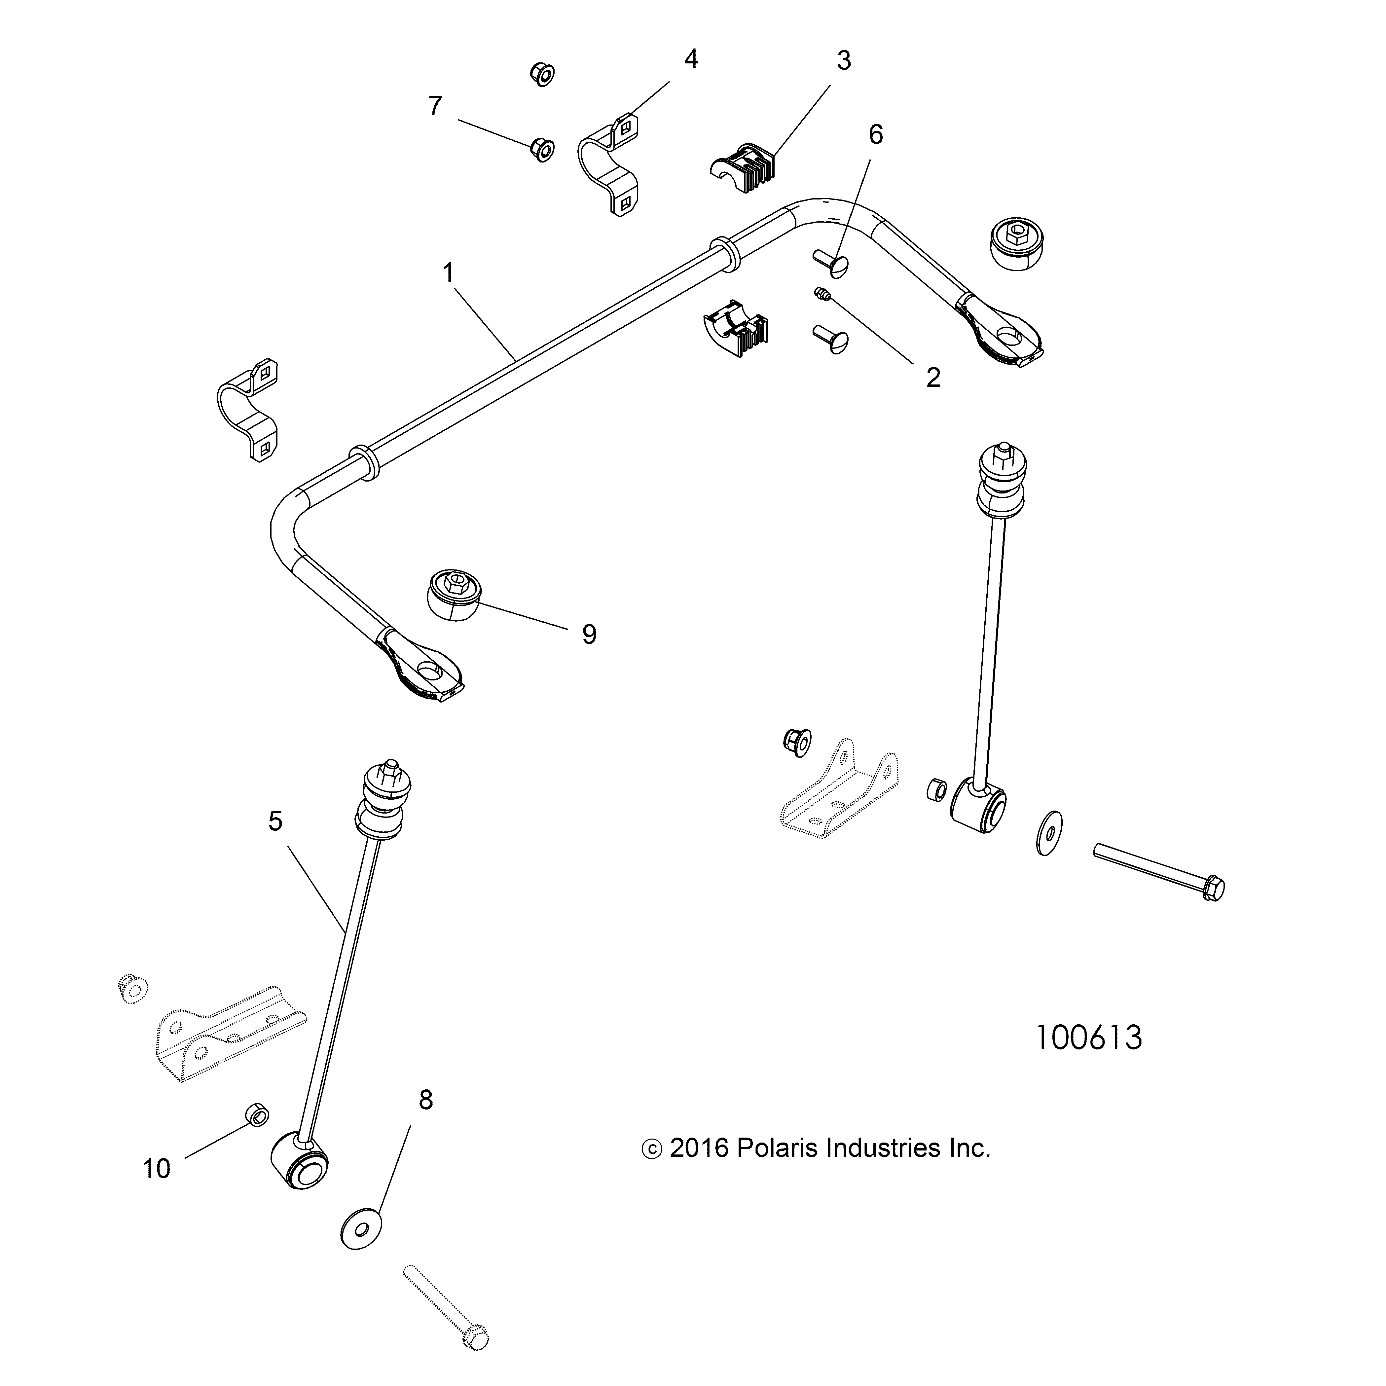 Foto diagrama Polaris que contem a peça 5334945